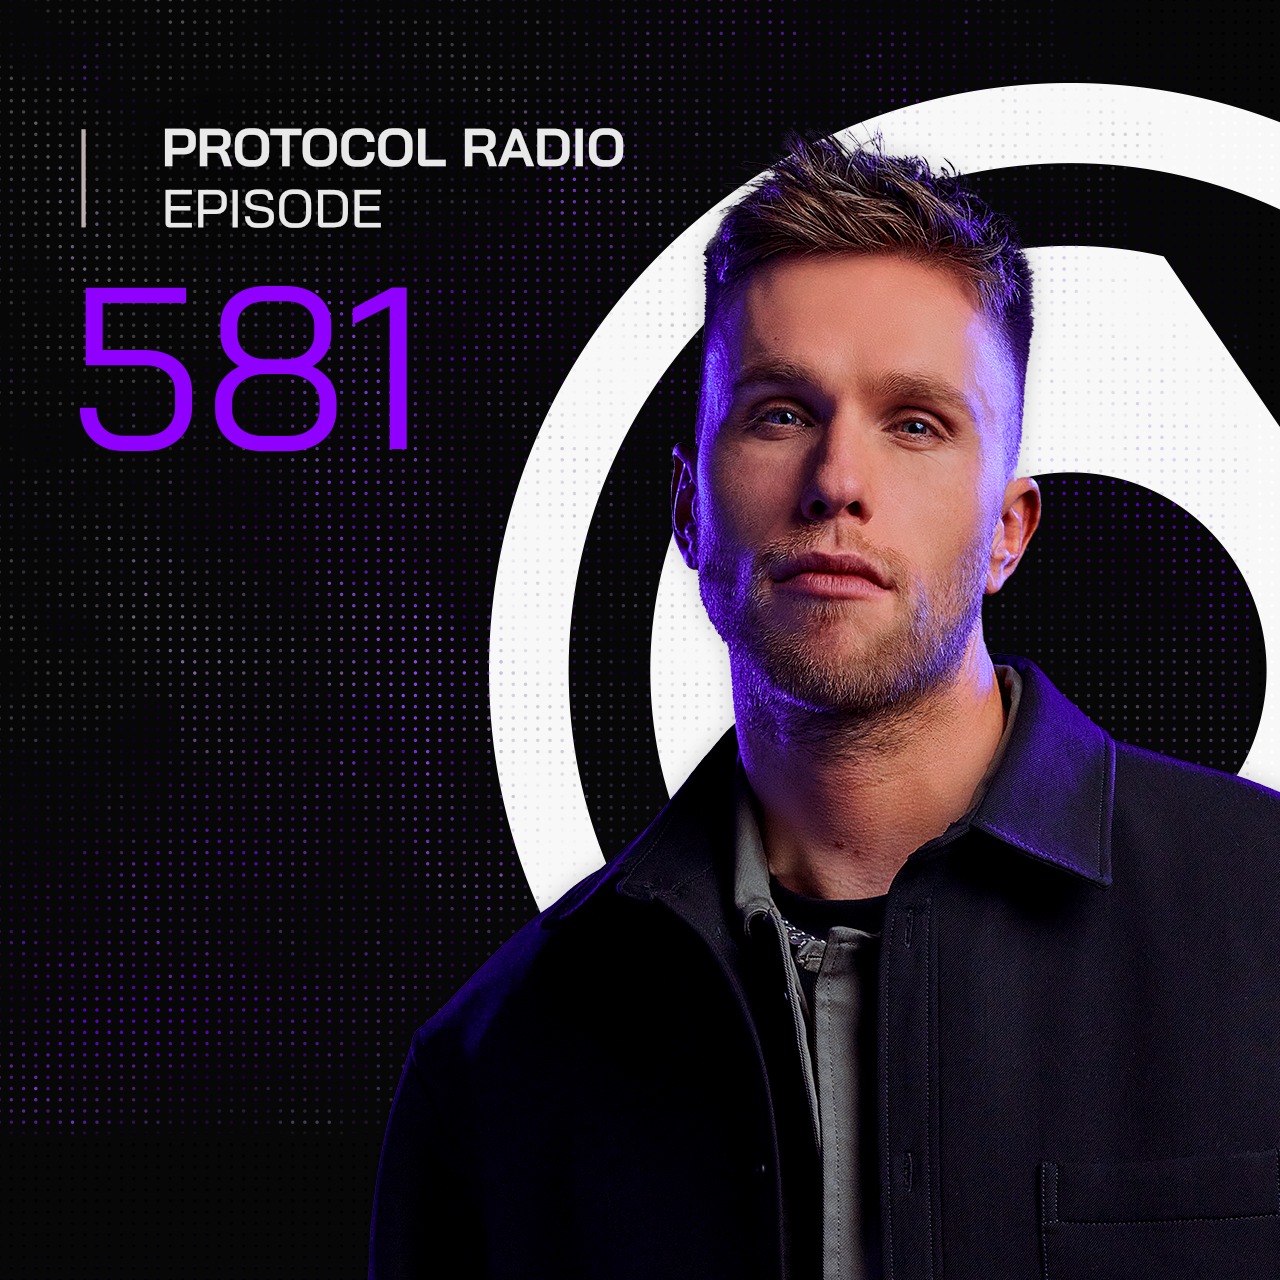 Protocol Radio #581